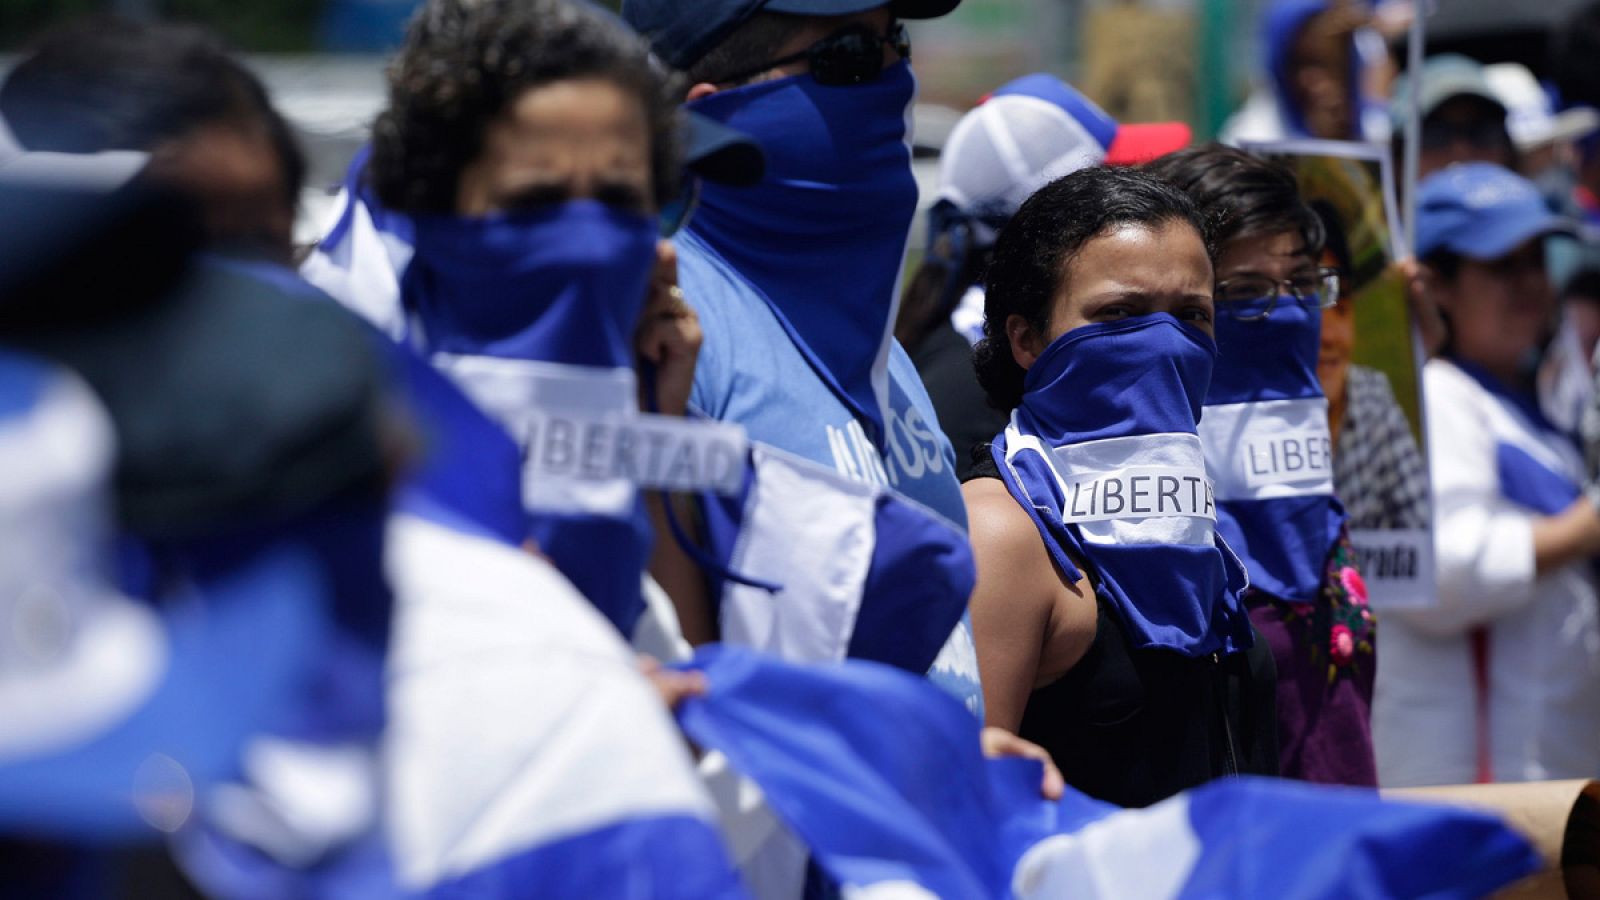 Marcha en ocasión del Día Internacional de los Desaparecidos realizada en Managua